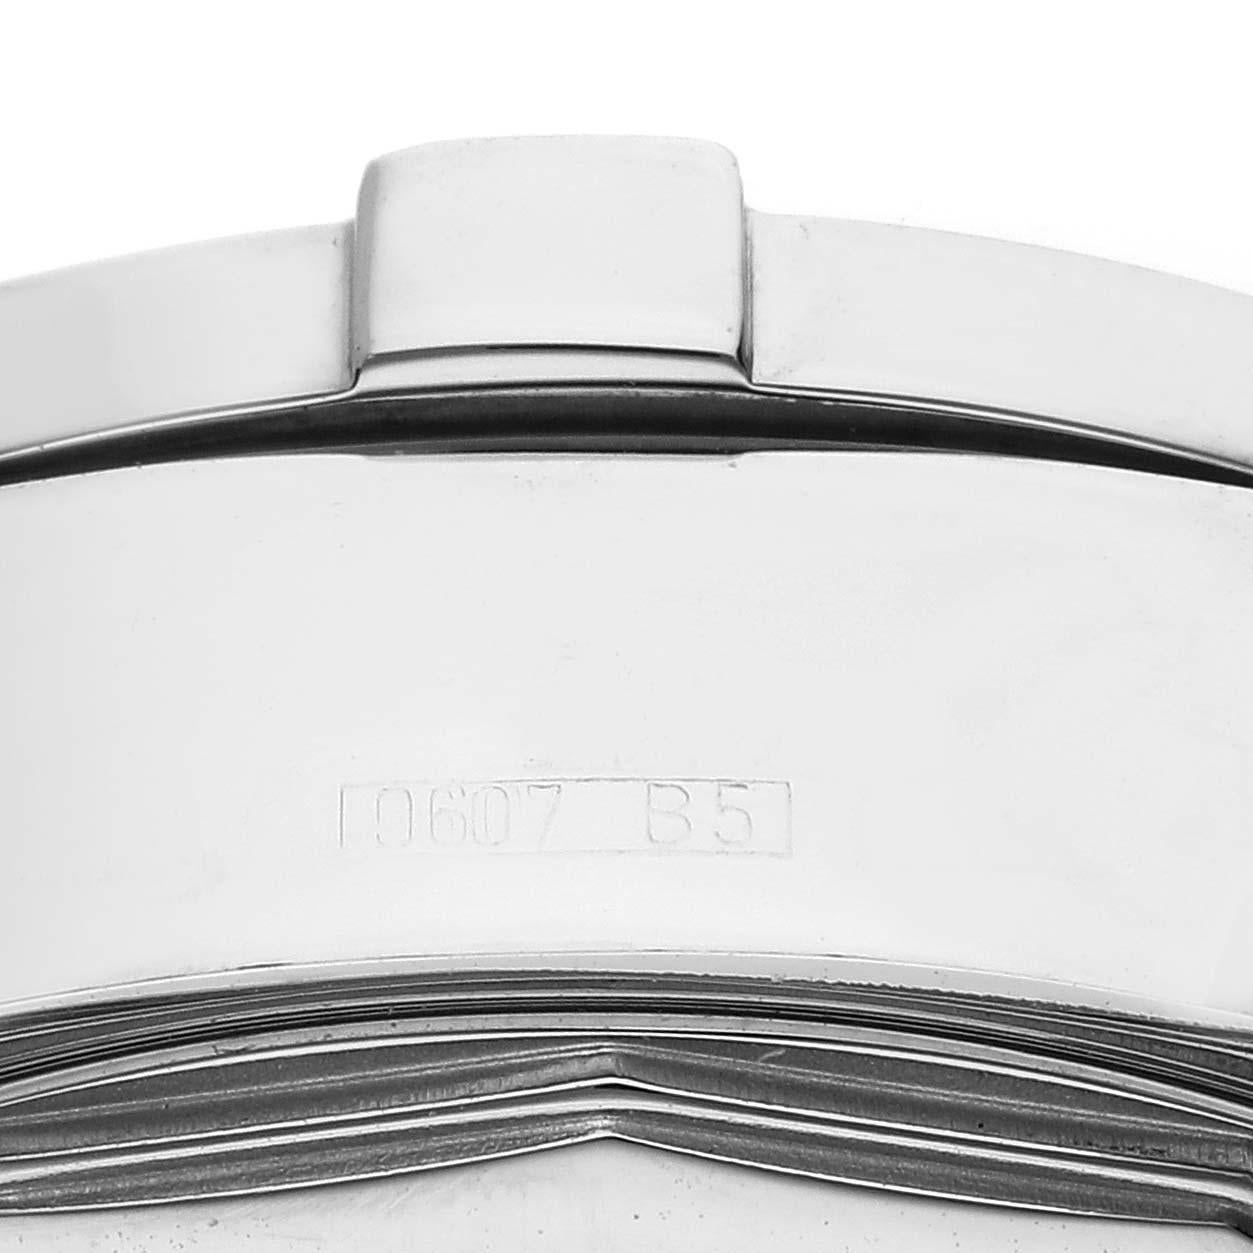 Breitling Aeromarine Superocean Silber Zifferblatt Stahl Herrenuhr A13340 Box Papiere. Automatisches Uhrwerk mit Selbstaufzug. Chronographen-Funktion. Gehäuse aus Edelstahl mit einem Durchmesser von 42 mm. Verschraubte Krone und Drücker aus